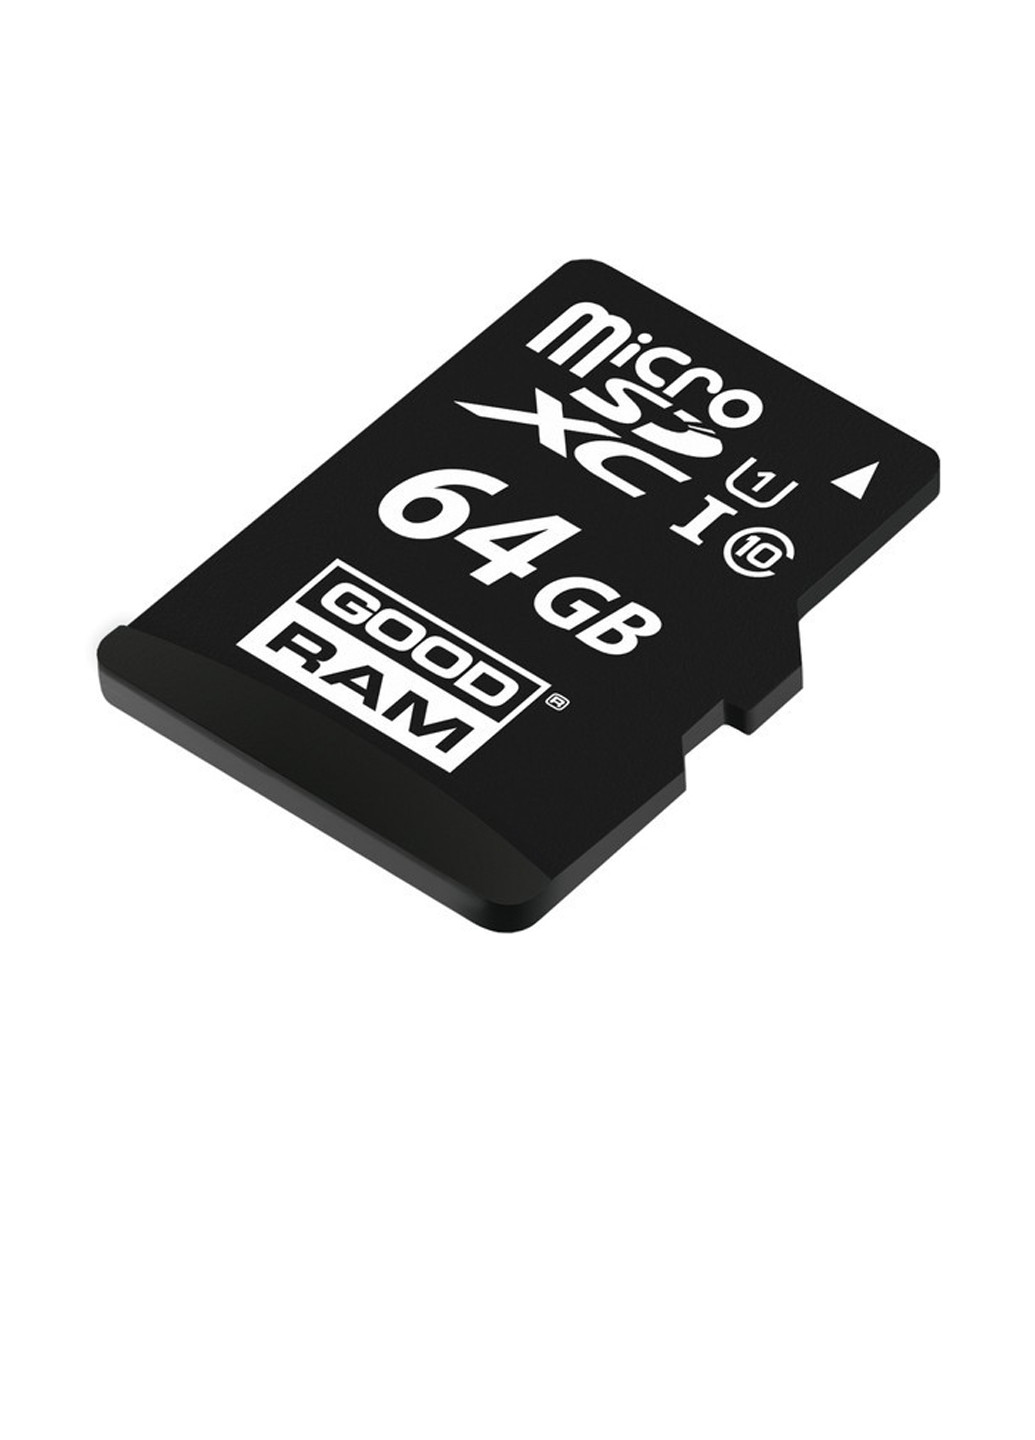 Карта памяти microSDHC 64GB C10 UHS-I + SD-adapter (M1AA-0640R12) Goodram карта памяти goodram microsdhc 64gb c10 uhs-i + sd-adapter (m1aa-0640r12) (135316879)